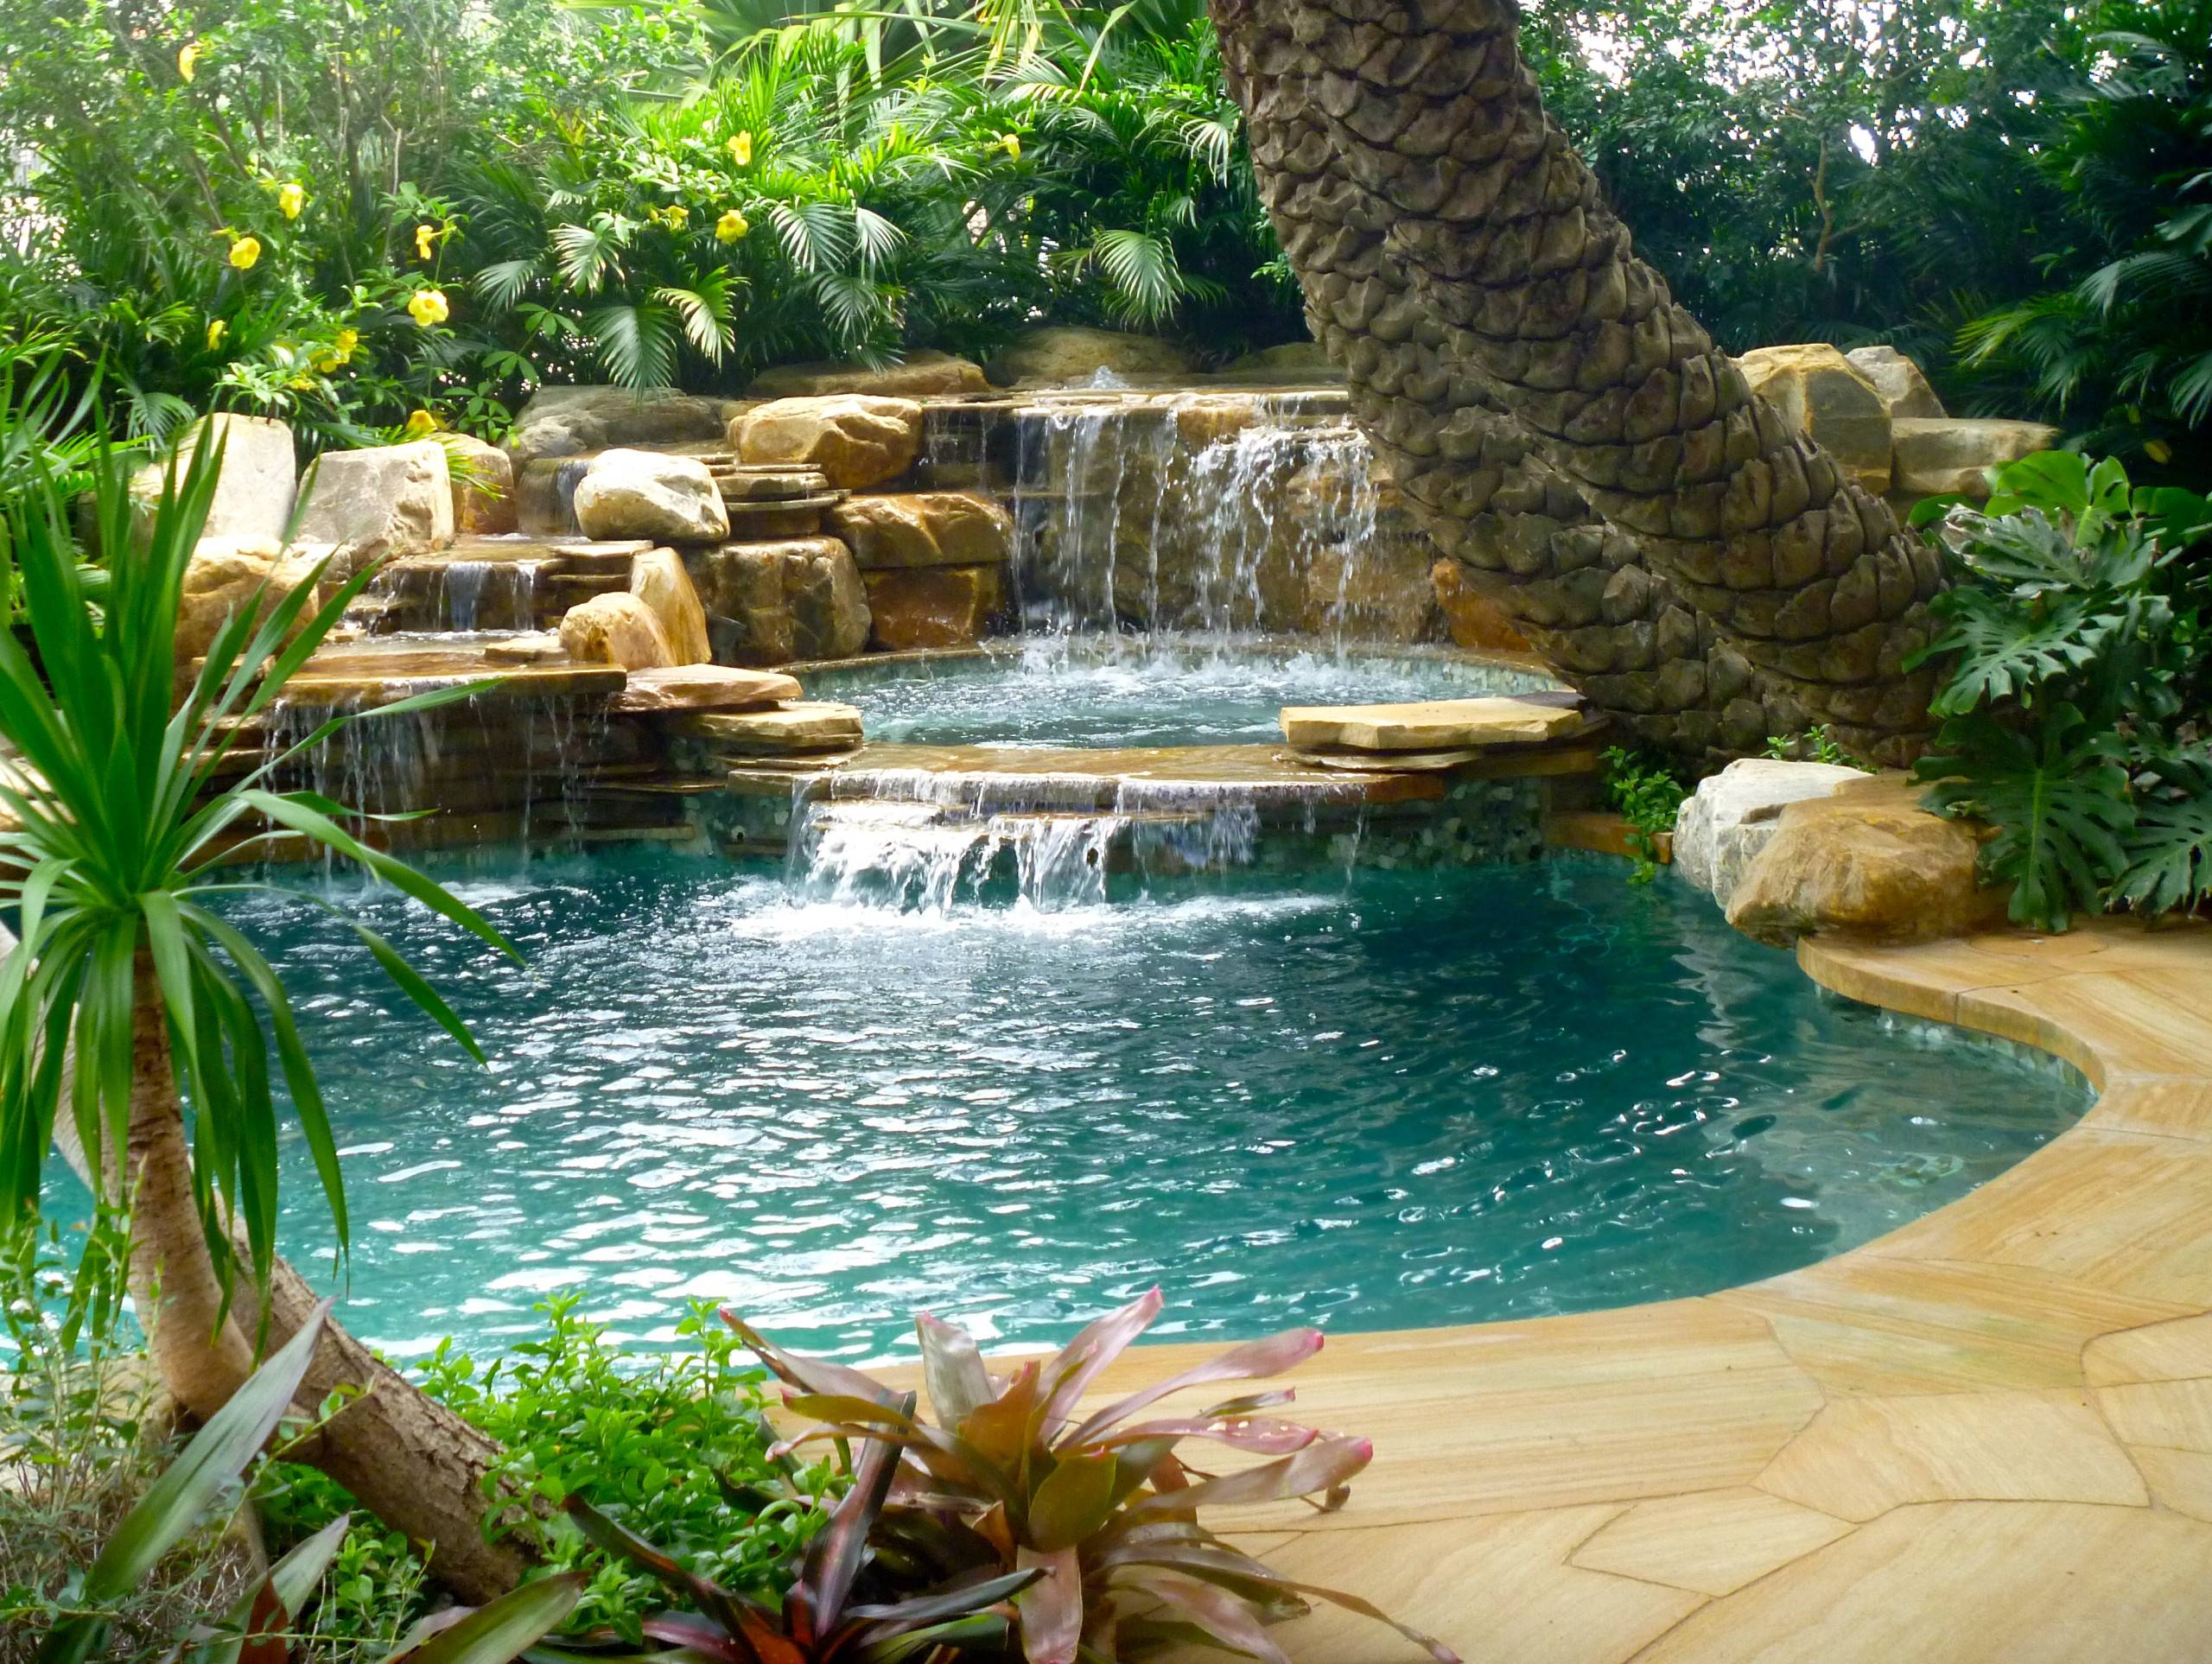 south-florida-landscaping-ideas-pool-matthew-giampietro-garden-design-img~4e21961b0da12098_14-0711-1-ecd6fca